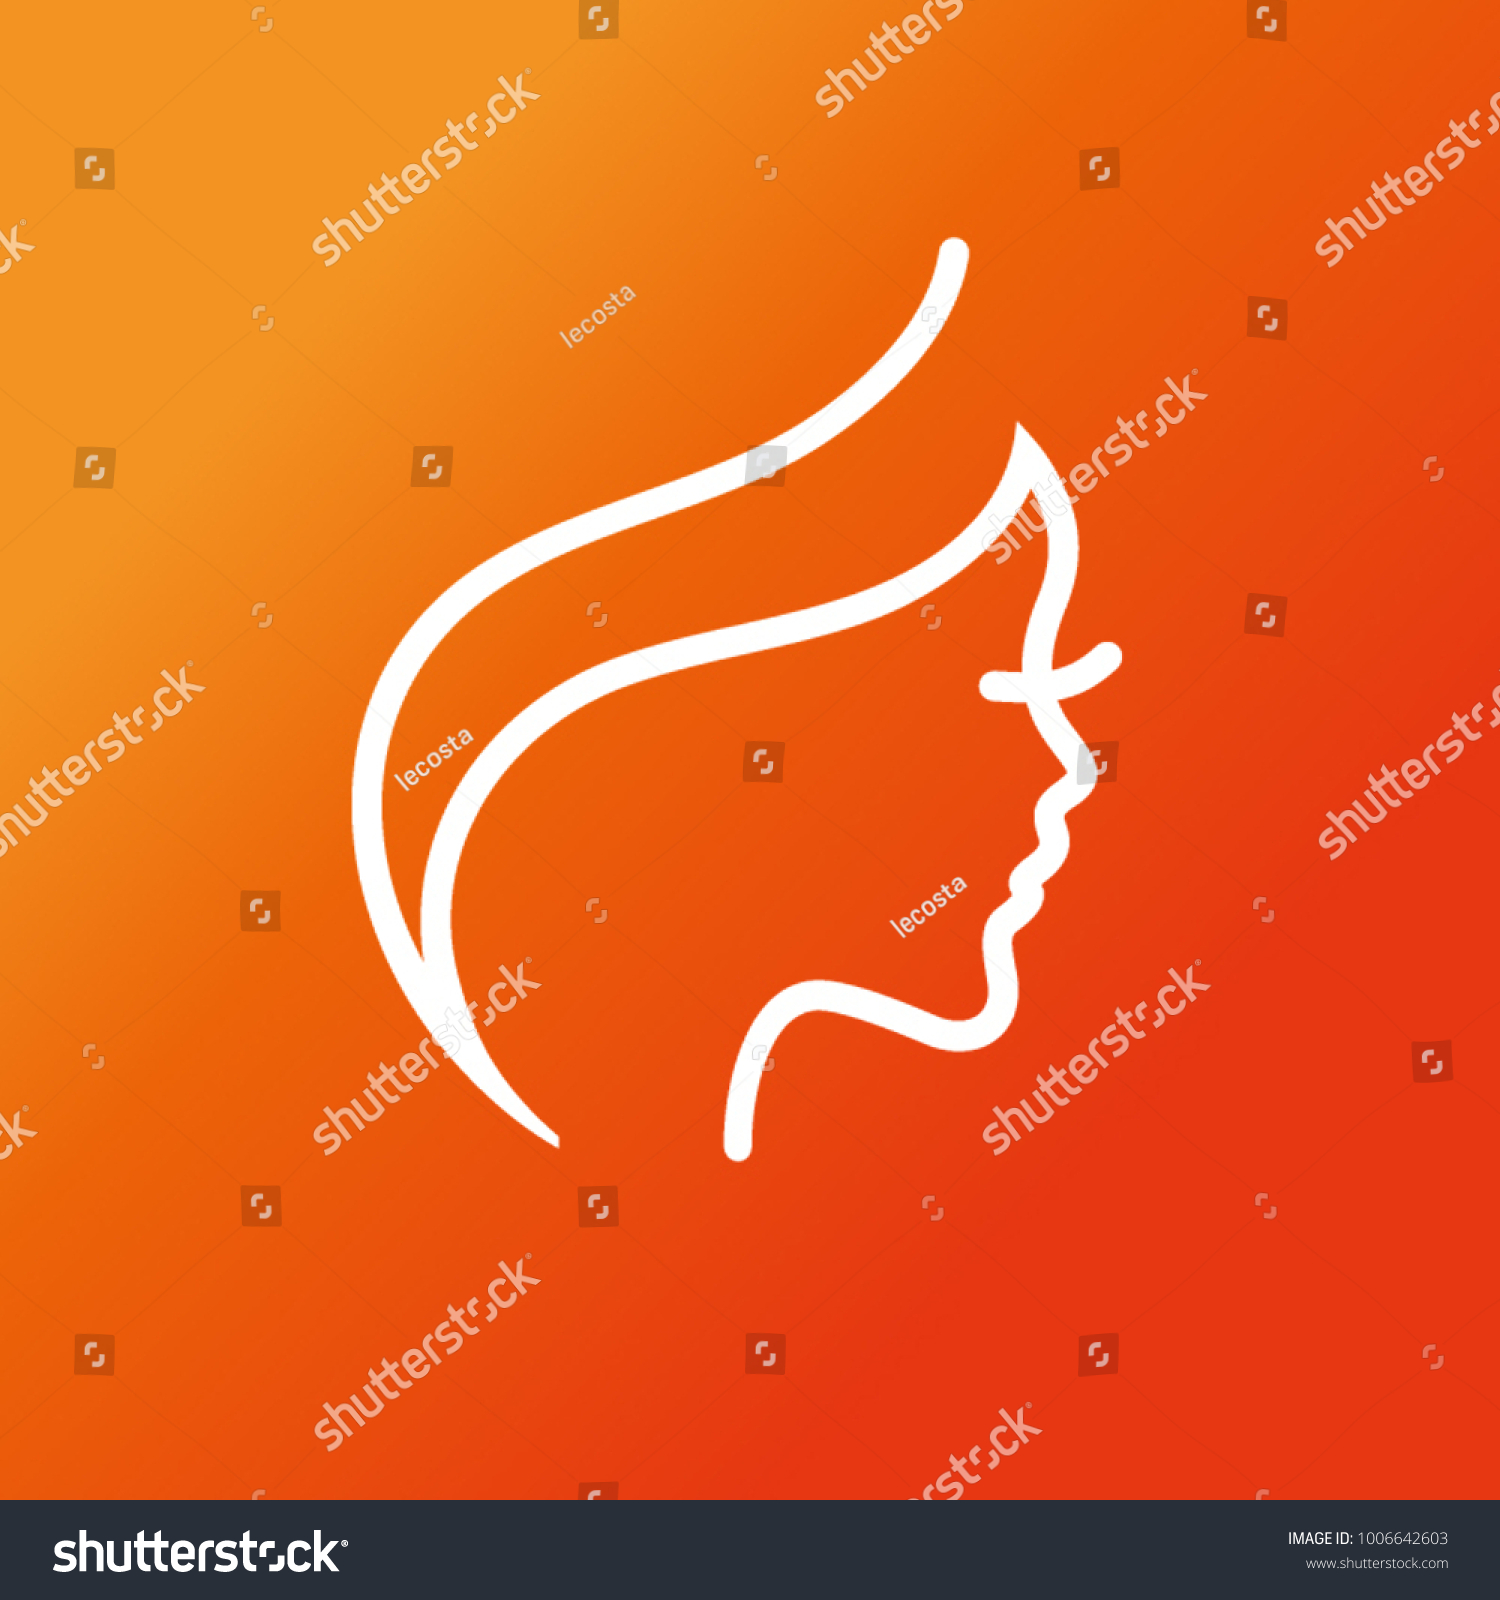 Woman face logos #1006642603